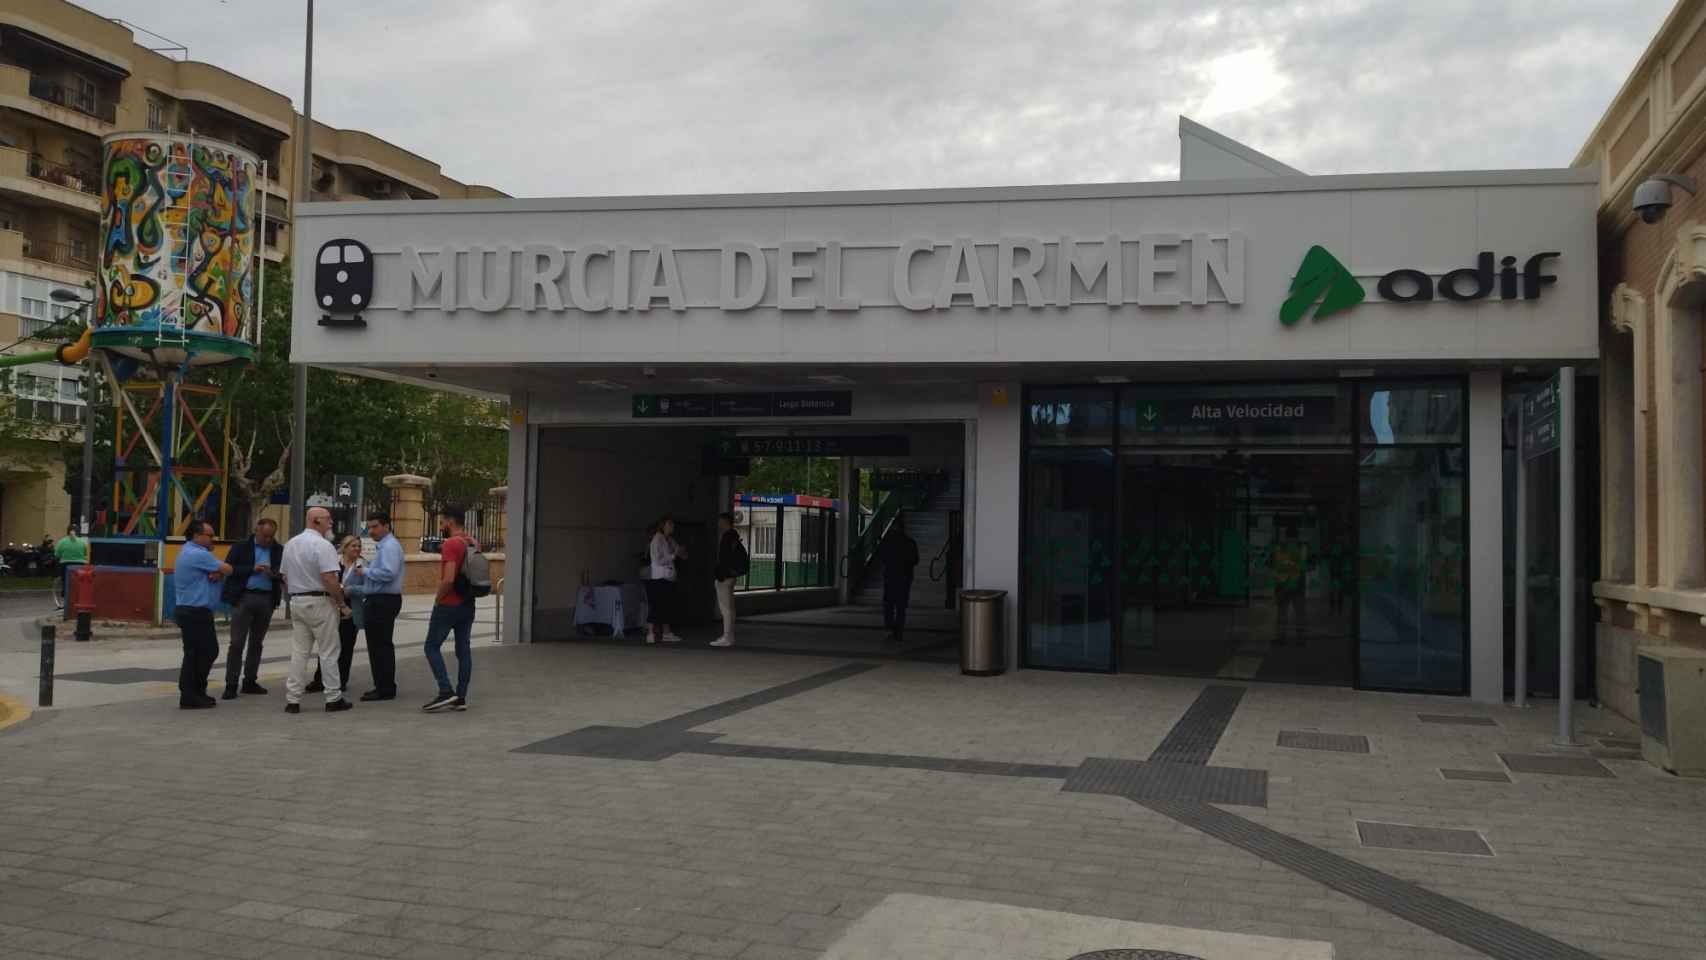 Estación de tren, ubicada en el Barrio del Carmen de Murcia, donde fue arrestado Roger.